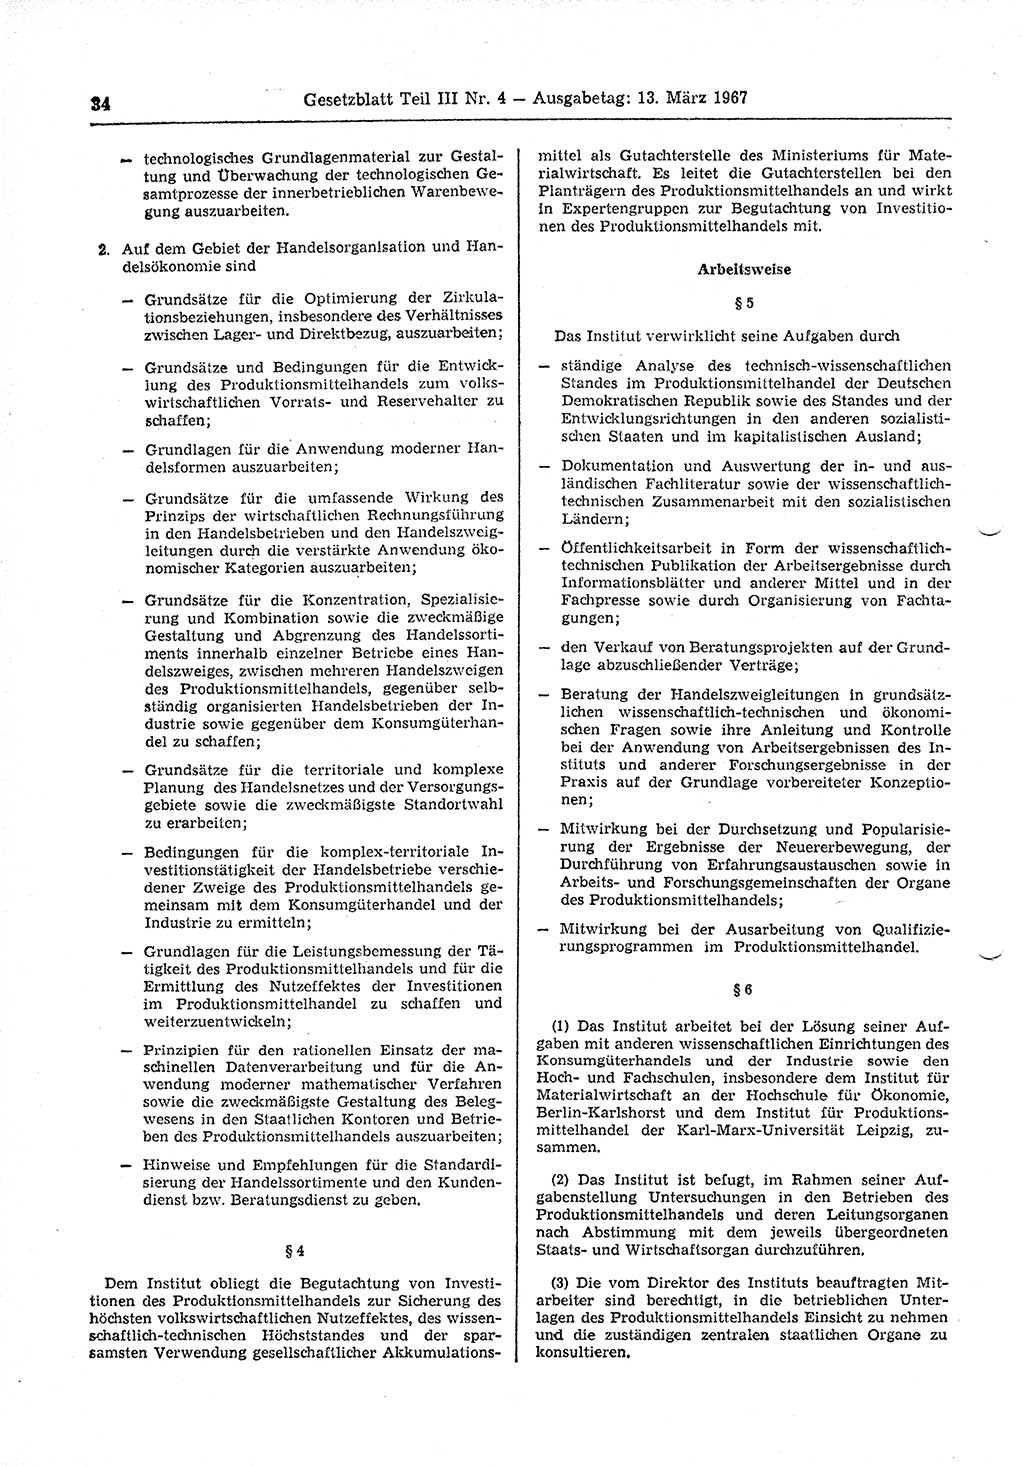 Gesetzblatt (GBl.) der Deutschen Demokratischen Republik (DDR) Teil ⅠⅠⅠ 1967, Seite 34 (GBl. DDR ⅠⅠⅠ 1967, S. 34)